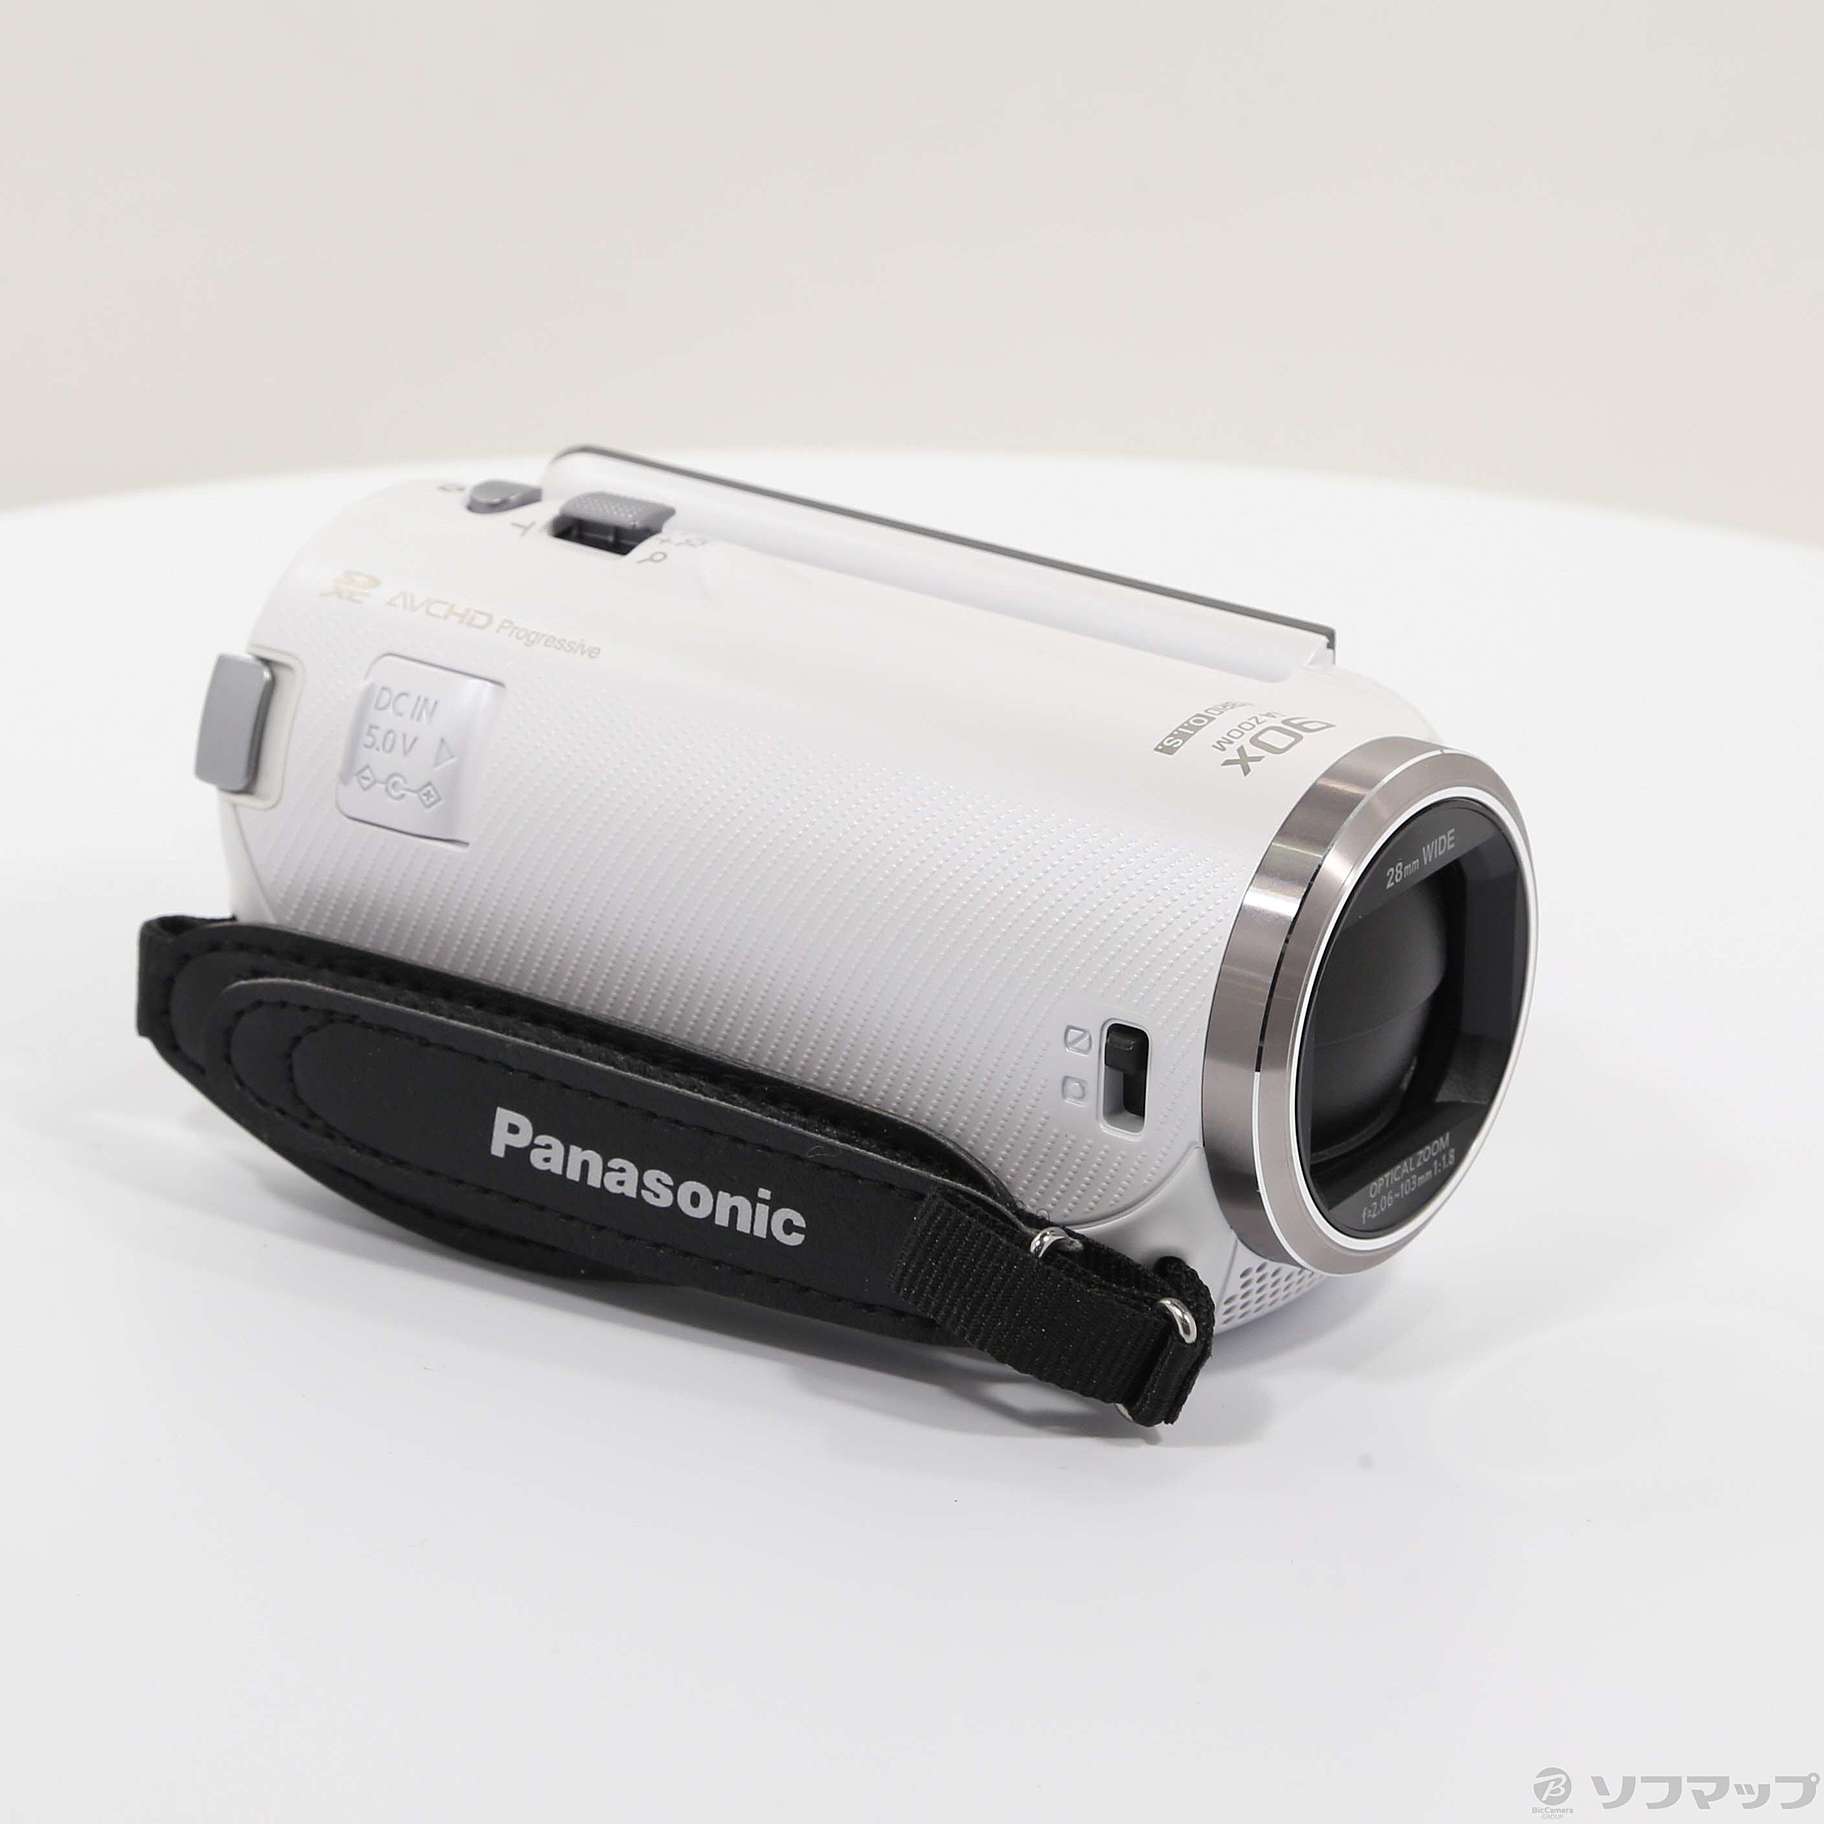 Panasonic パナソニック HC-V480M ホワイト - ビデオカメラ